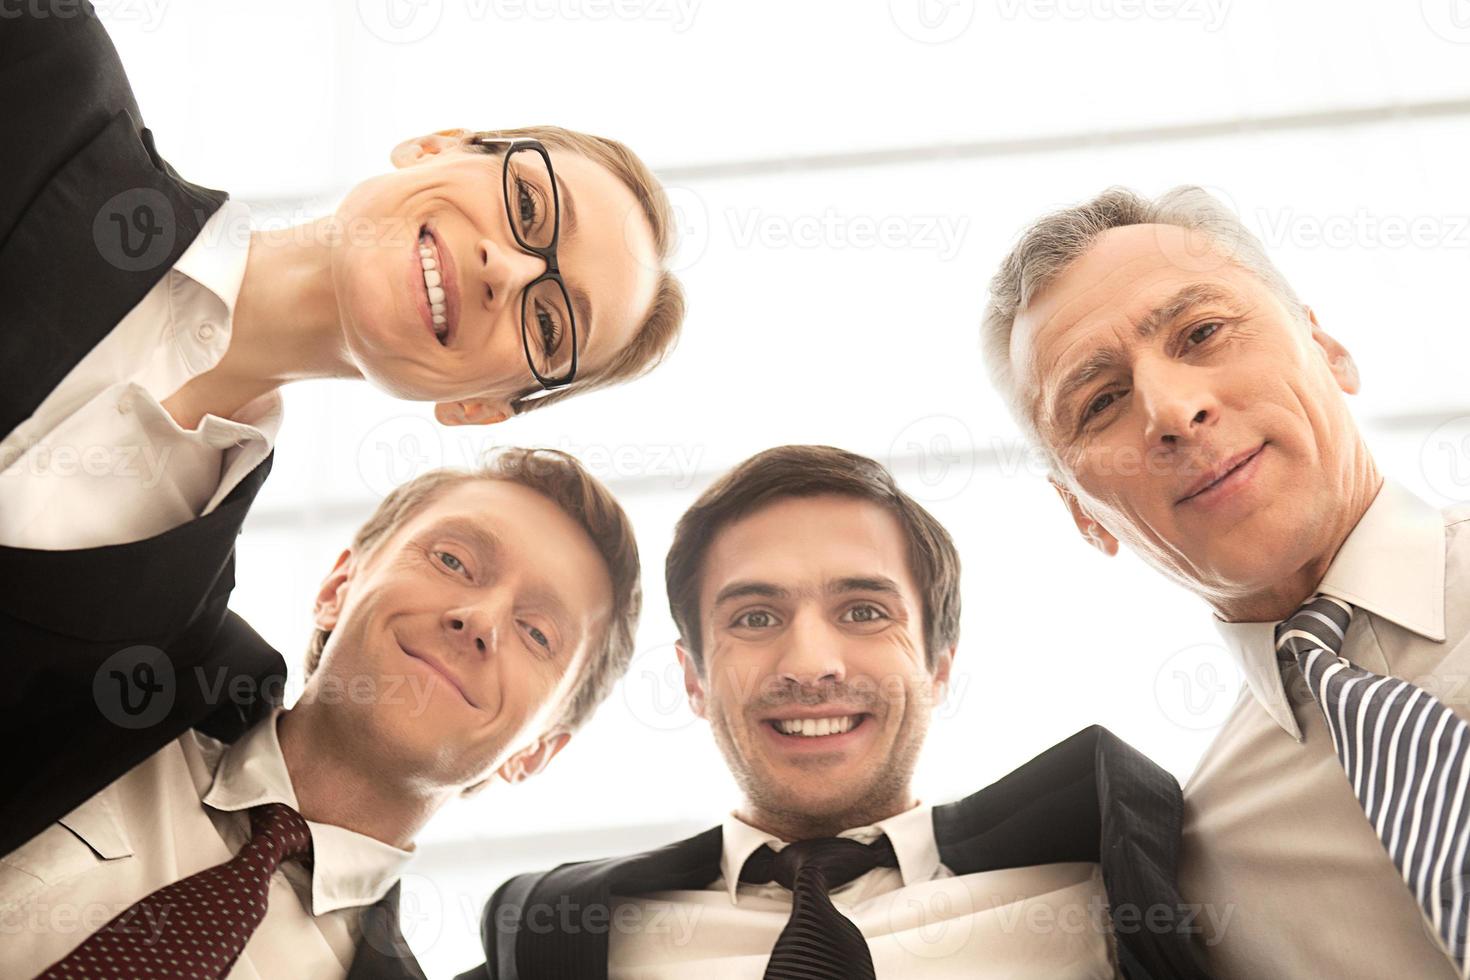 somos uma equipe de negócios forte. vista de ângulo baixo de quatro empresários alegres em pé perto um do outro e sorrindo para a câmera foto